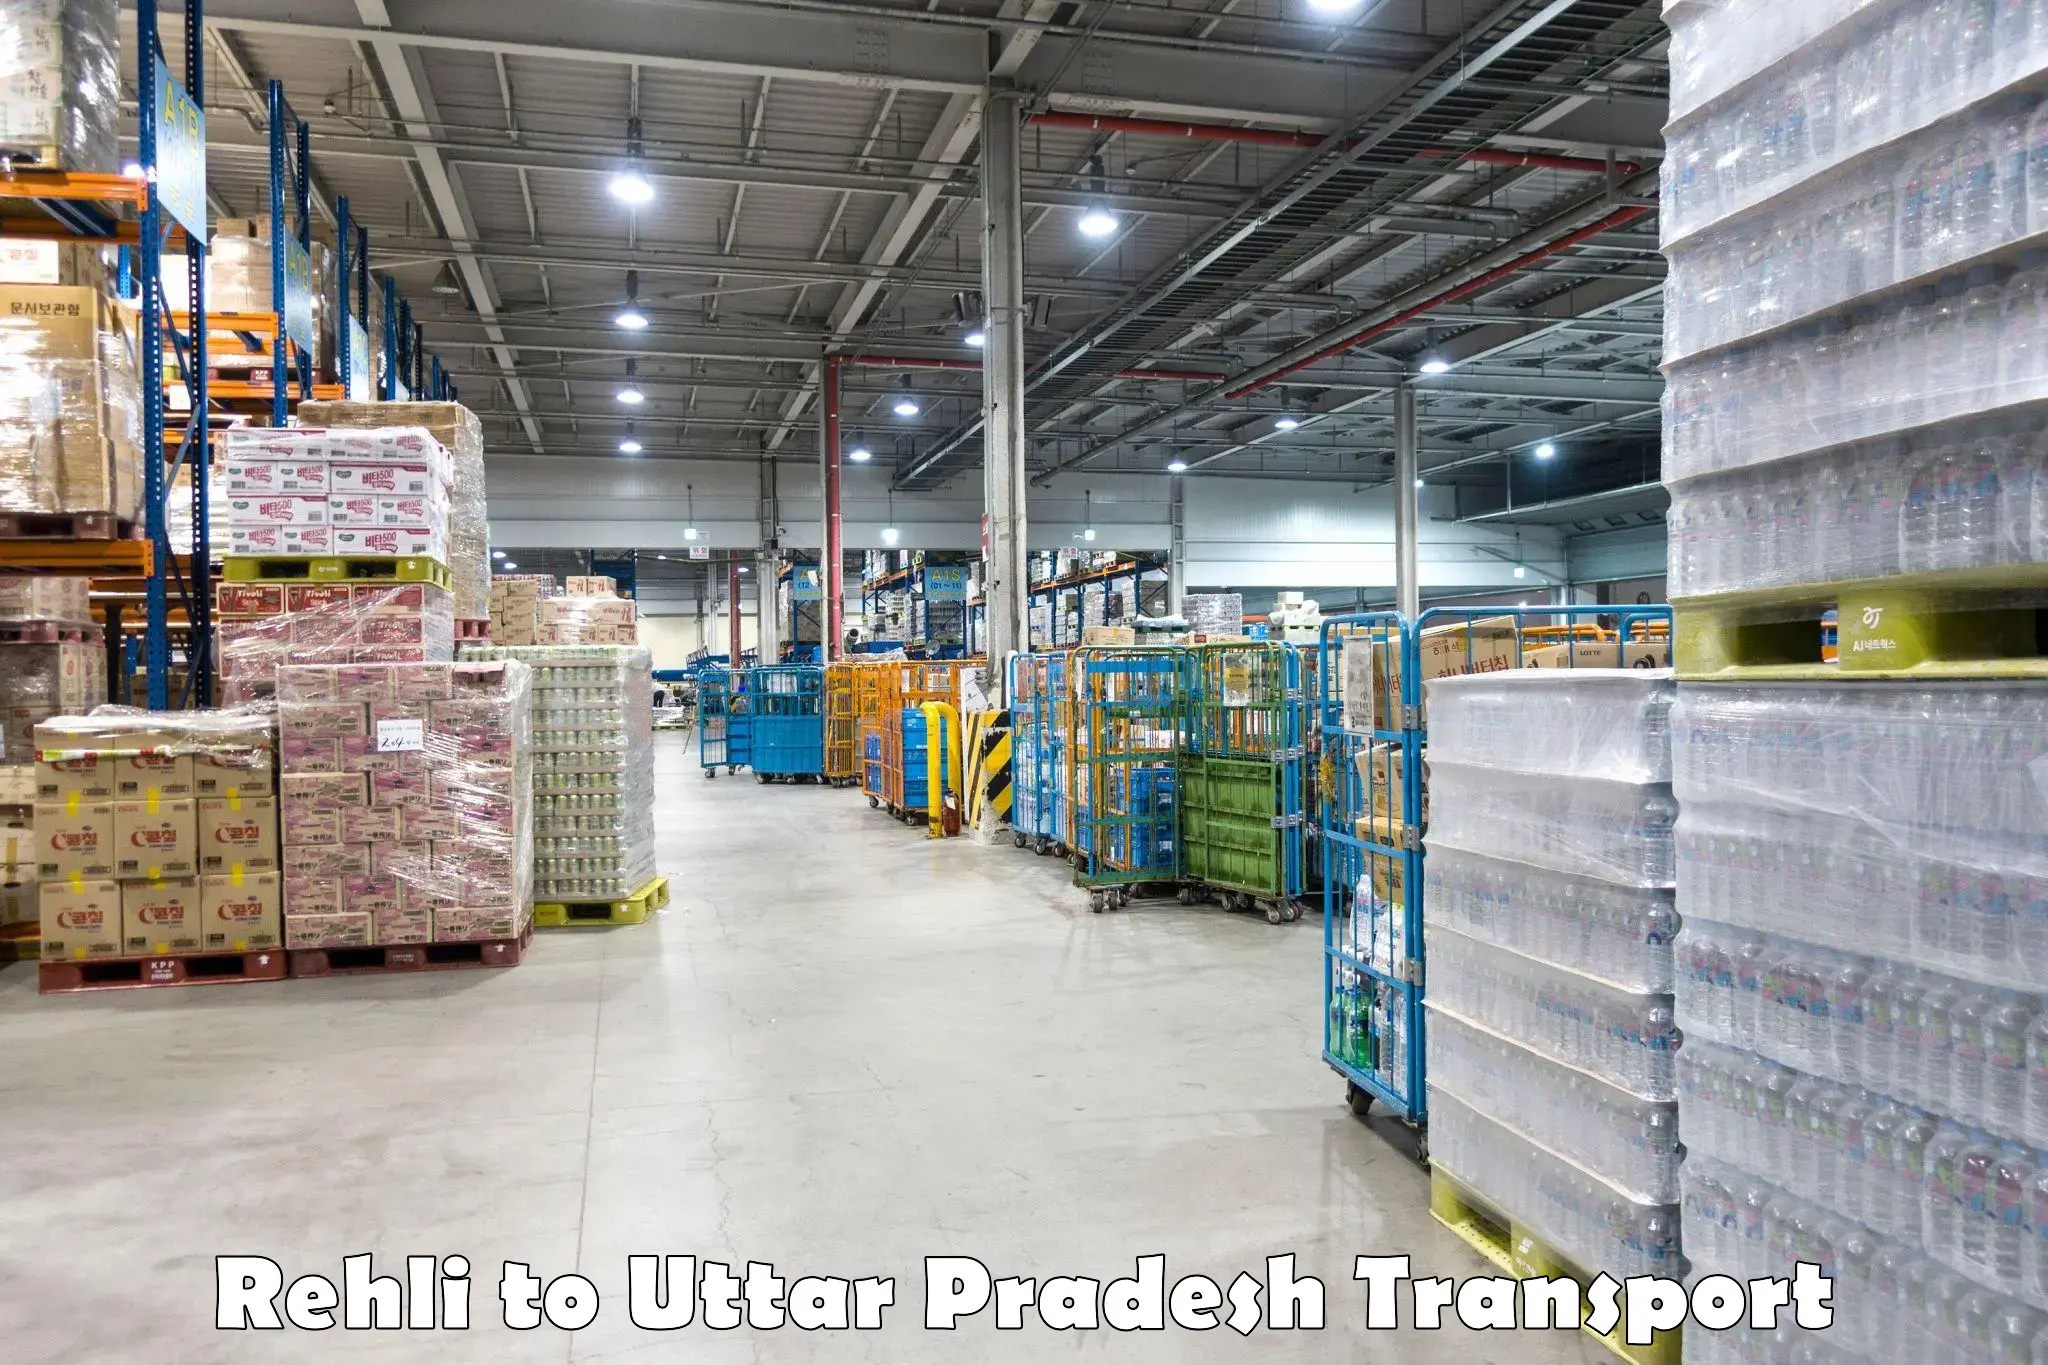 Daily parcel service transport Rehli to IIT Varanasi